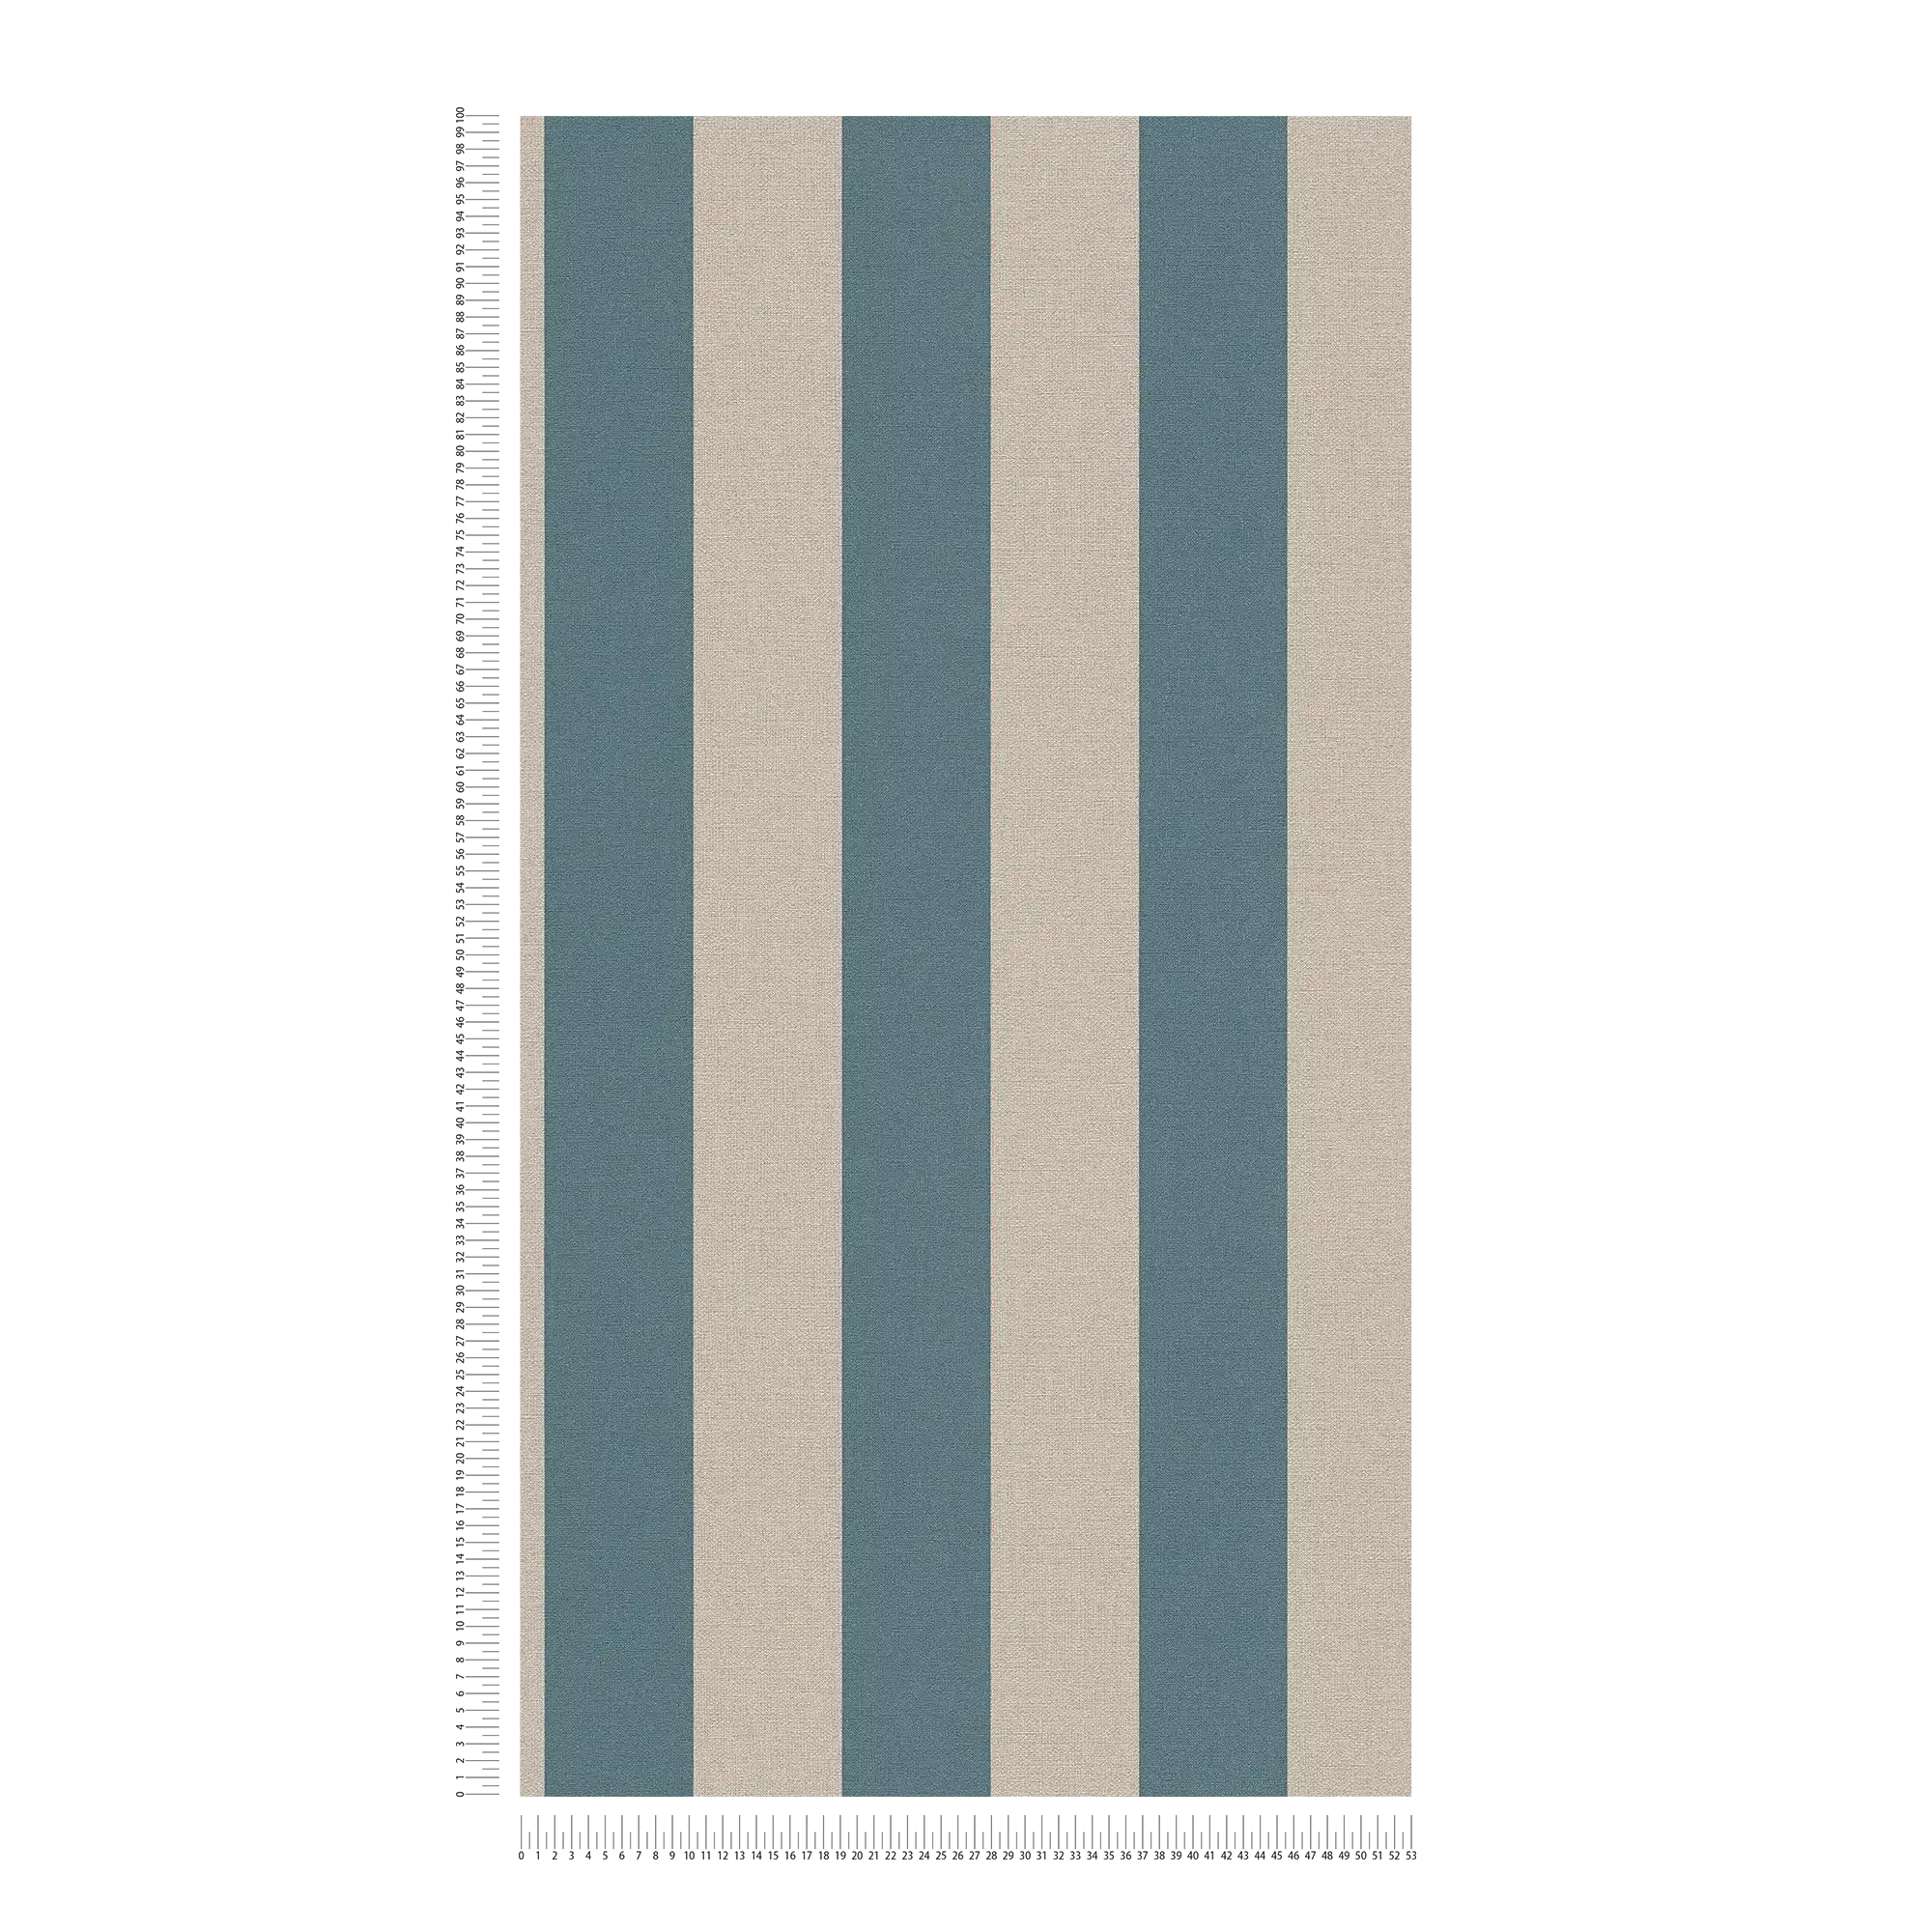             Streifentapete mit Leinenoptik PVC-frei – Blau, Braun
        